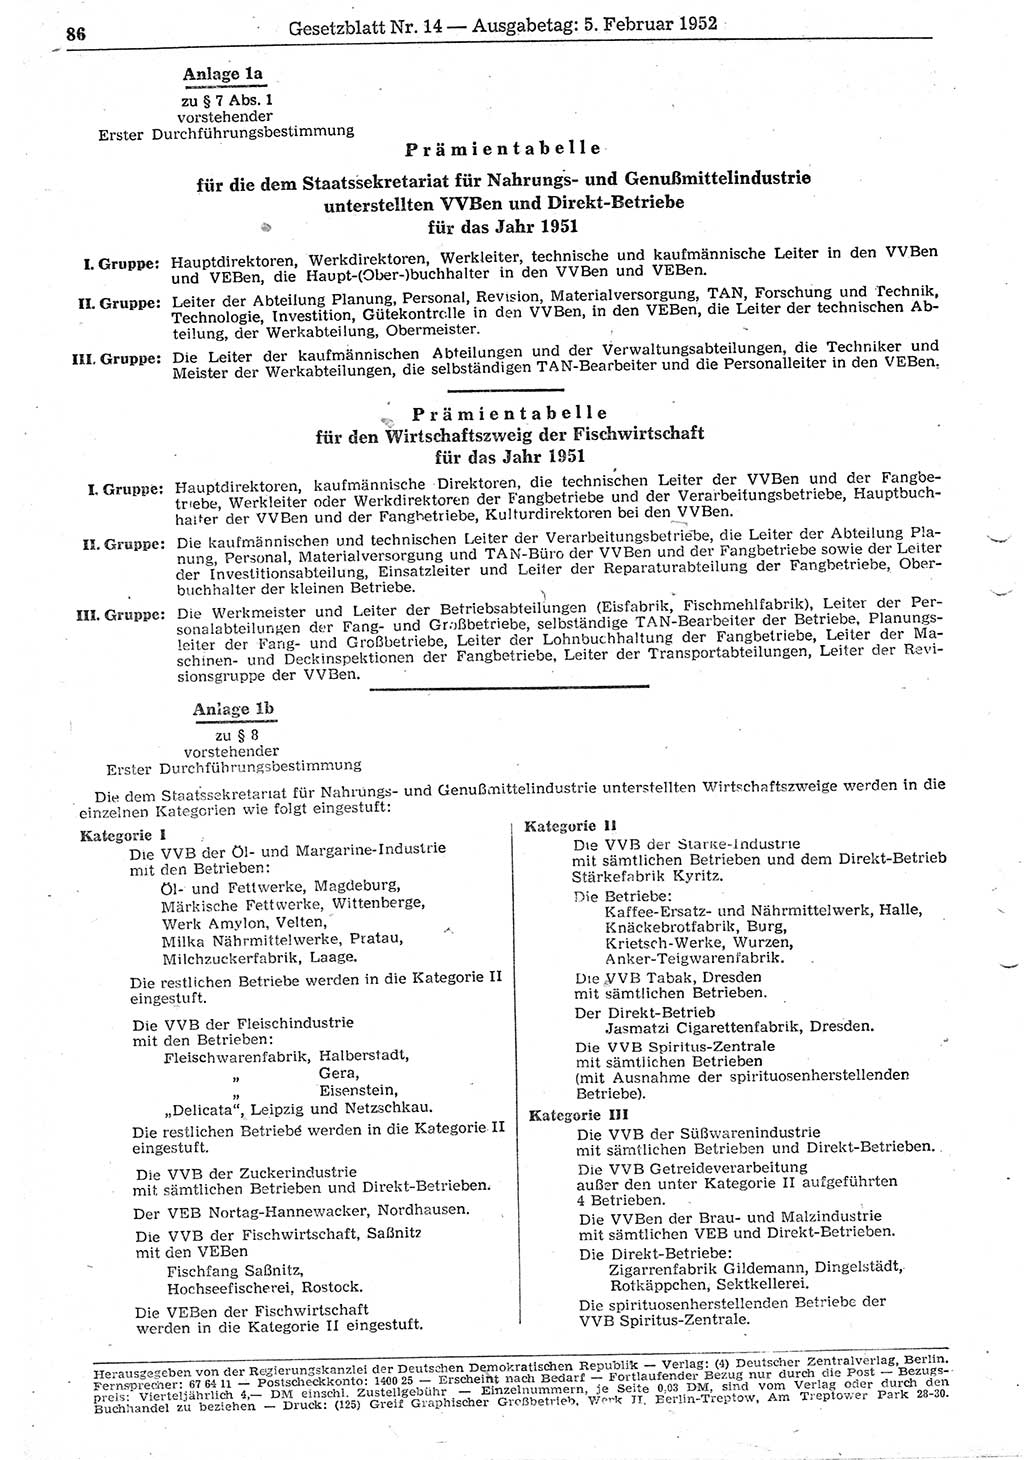 Gesetzblatt (GBl.) der Deutschen Demokratischen Republik (DDR) 1952, Seite 86 (GBl. DDR 1952, S. 86)